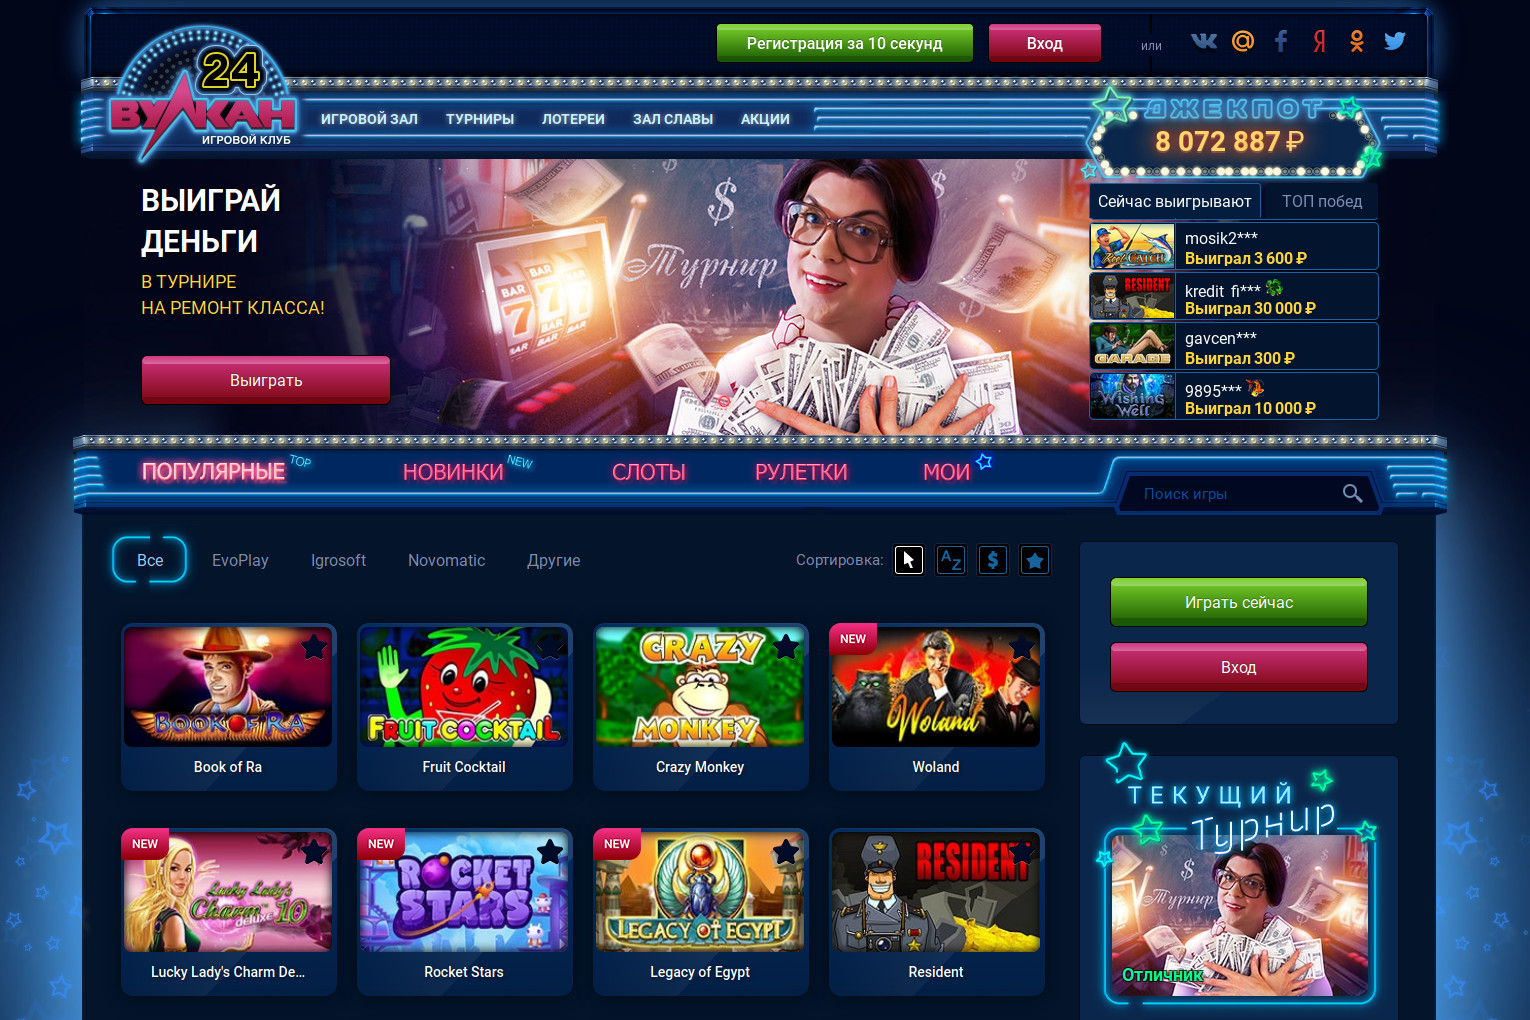 Казино вулкан 24 онлайн официальный сайт играть на деньги friends casino как вывести